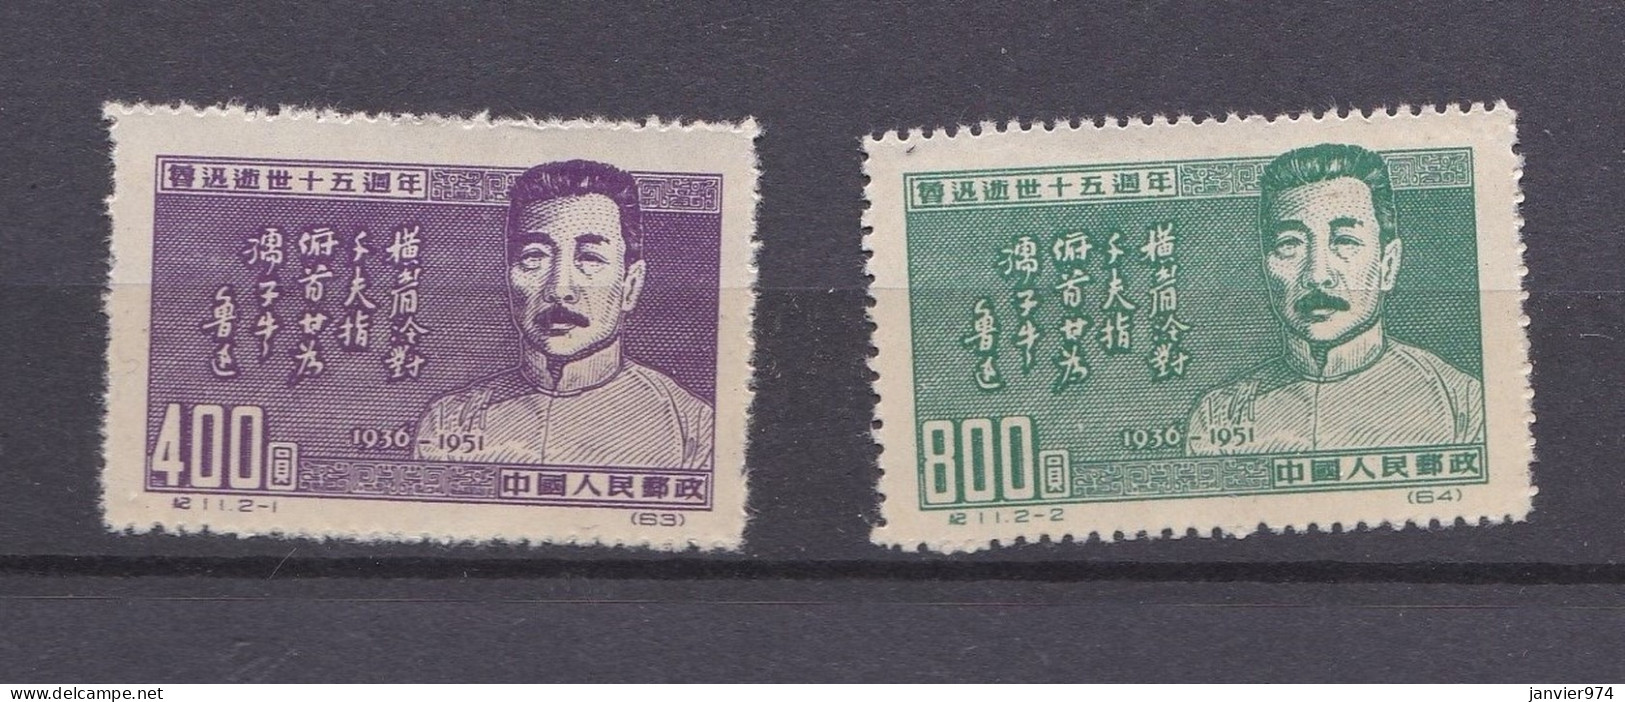 Chine 1951 La Serie Complete Anniversaire De La Mort De Lu Xun, 2 Timbres Neufs 127 – 128 - Nuovi